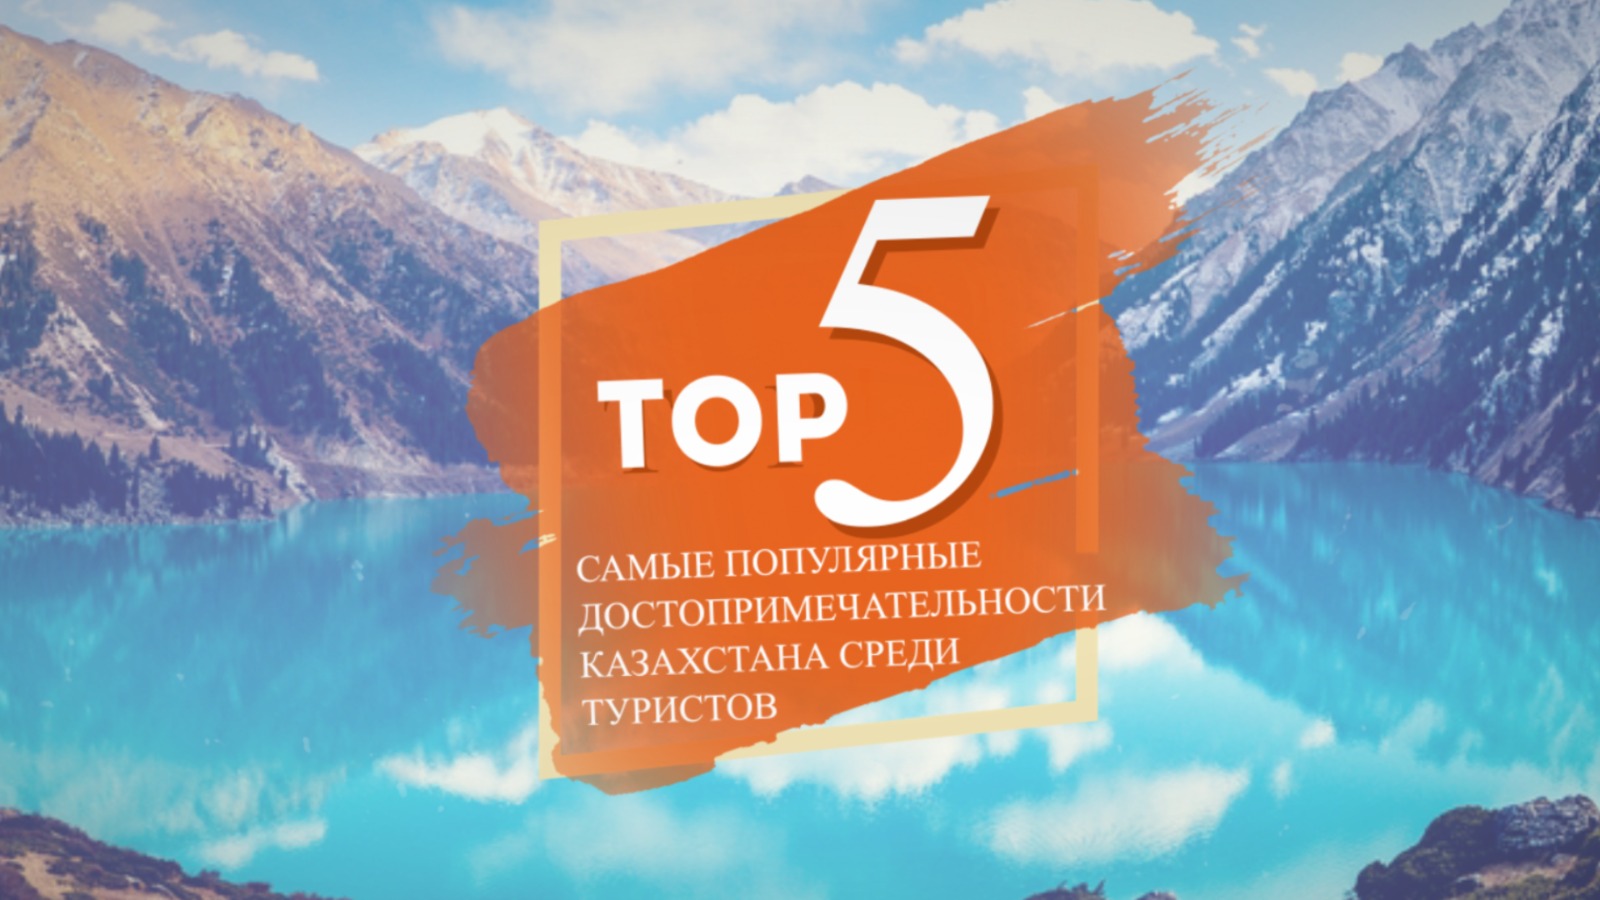 TOП-5: Самые популярные достопримечательности Казахстана среди туристов